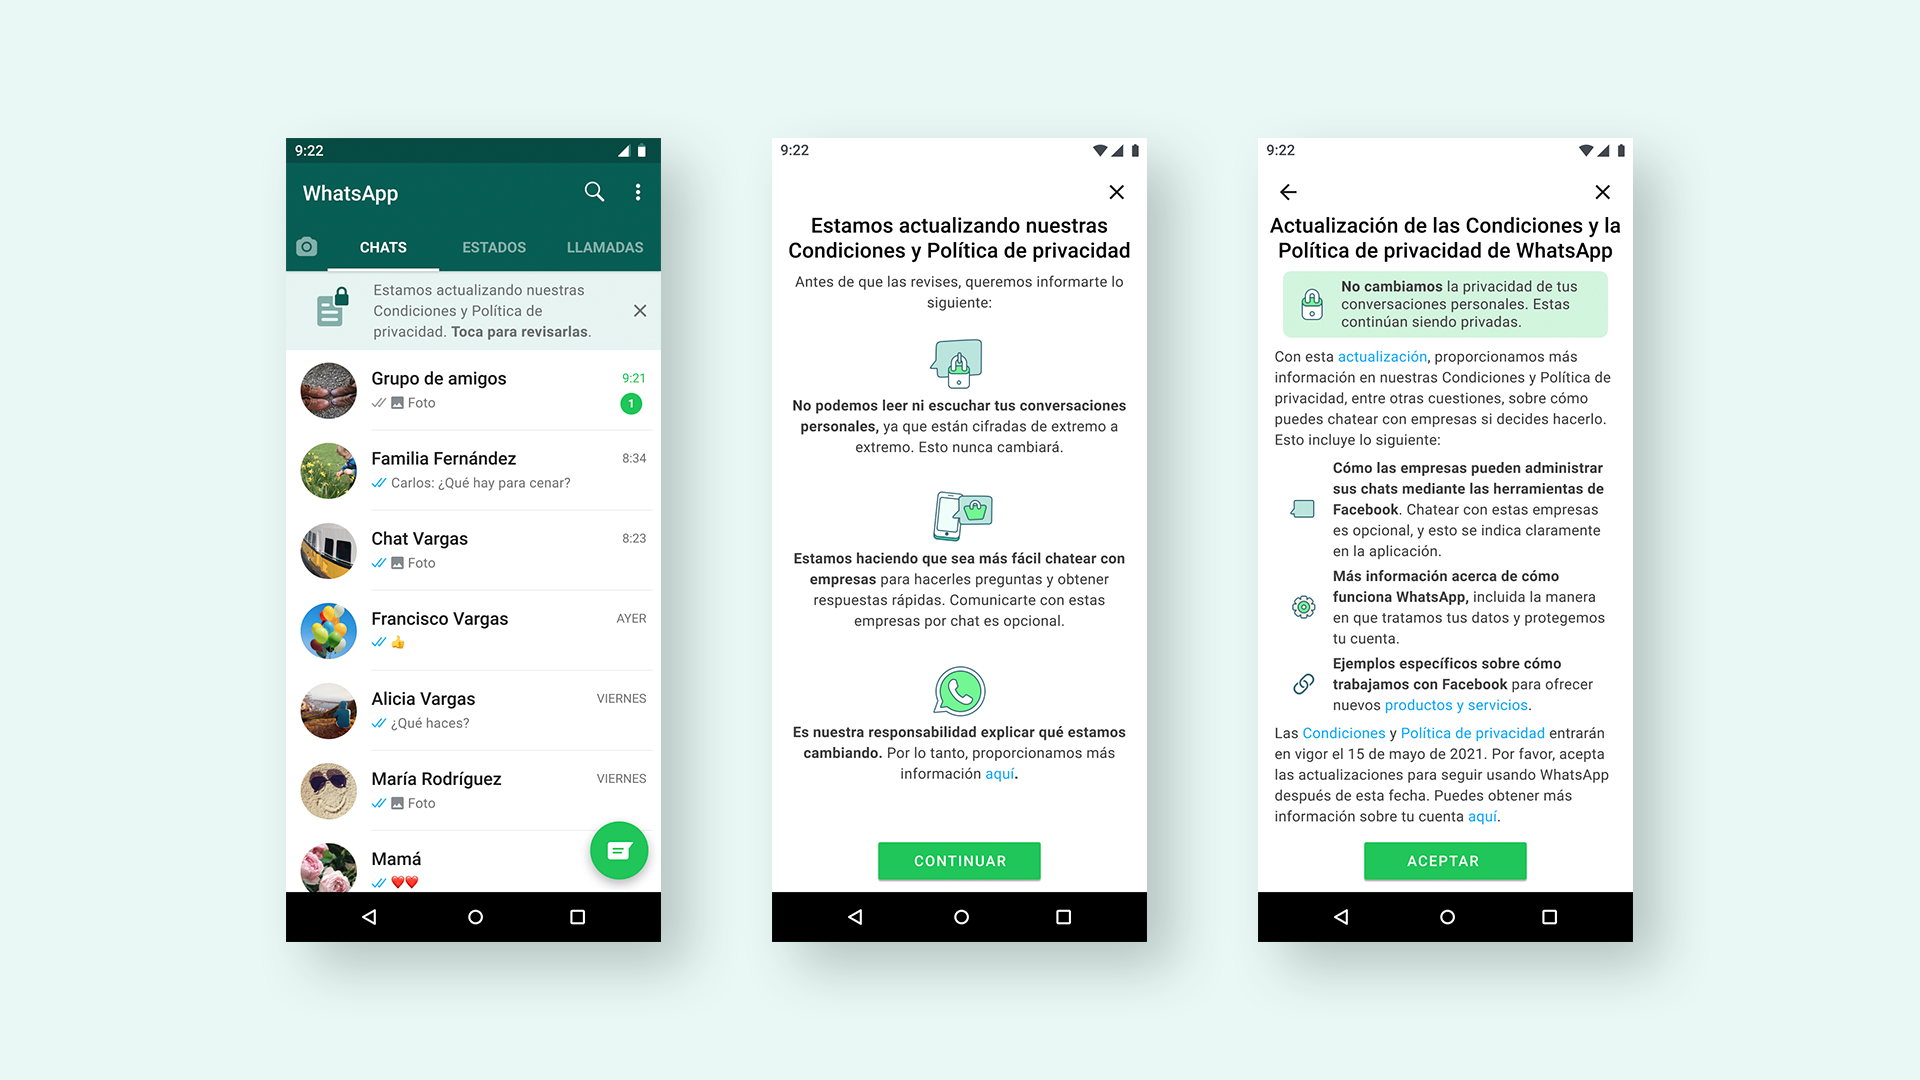 WhatsApp: cómo saber si ya aceptaste las nuevas condiciones 2021